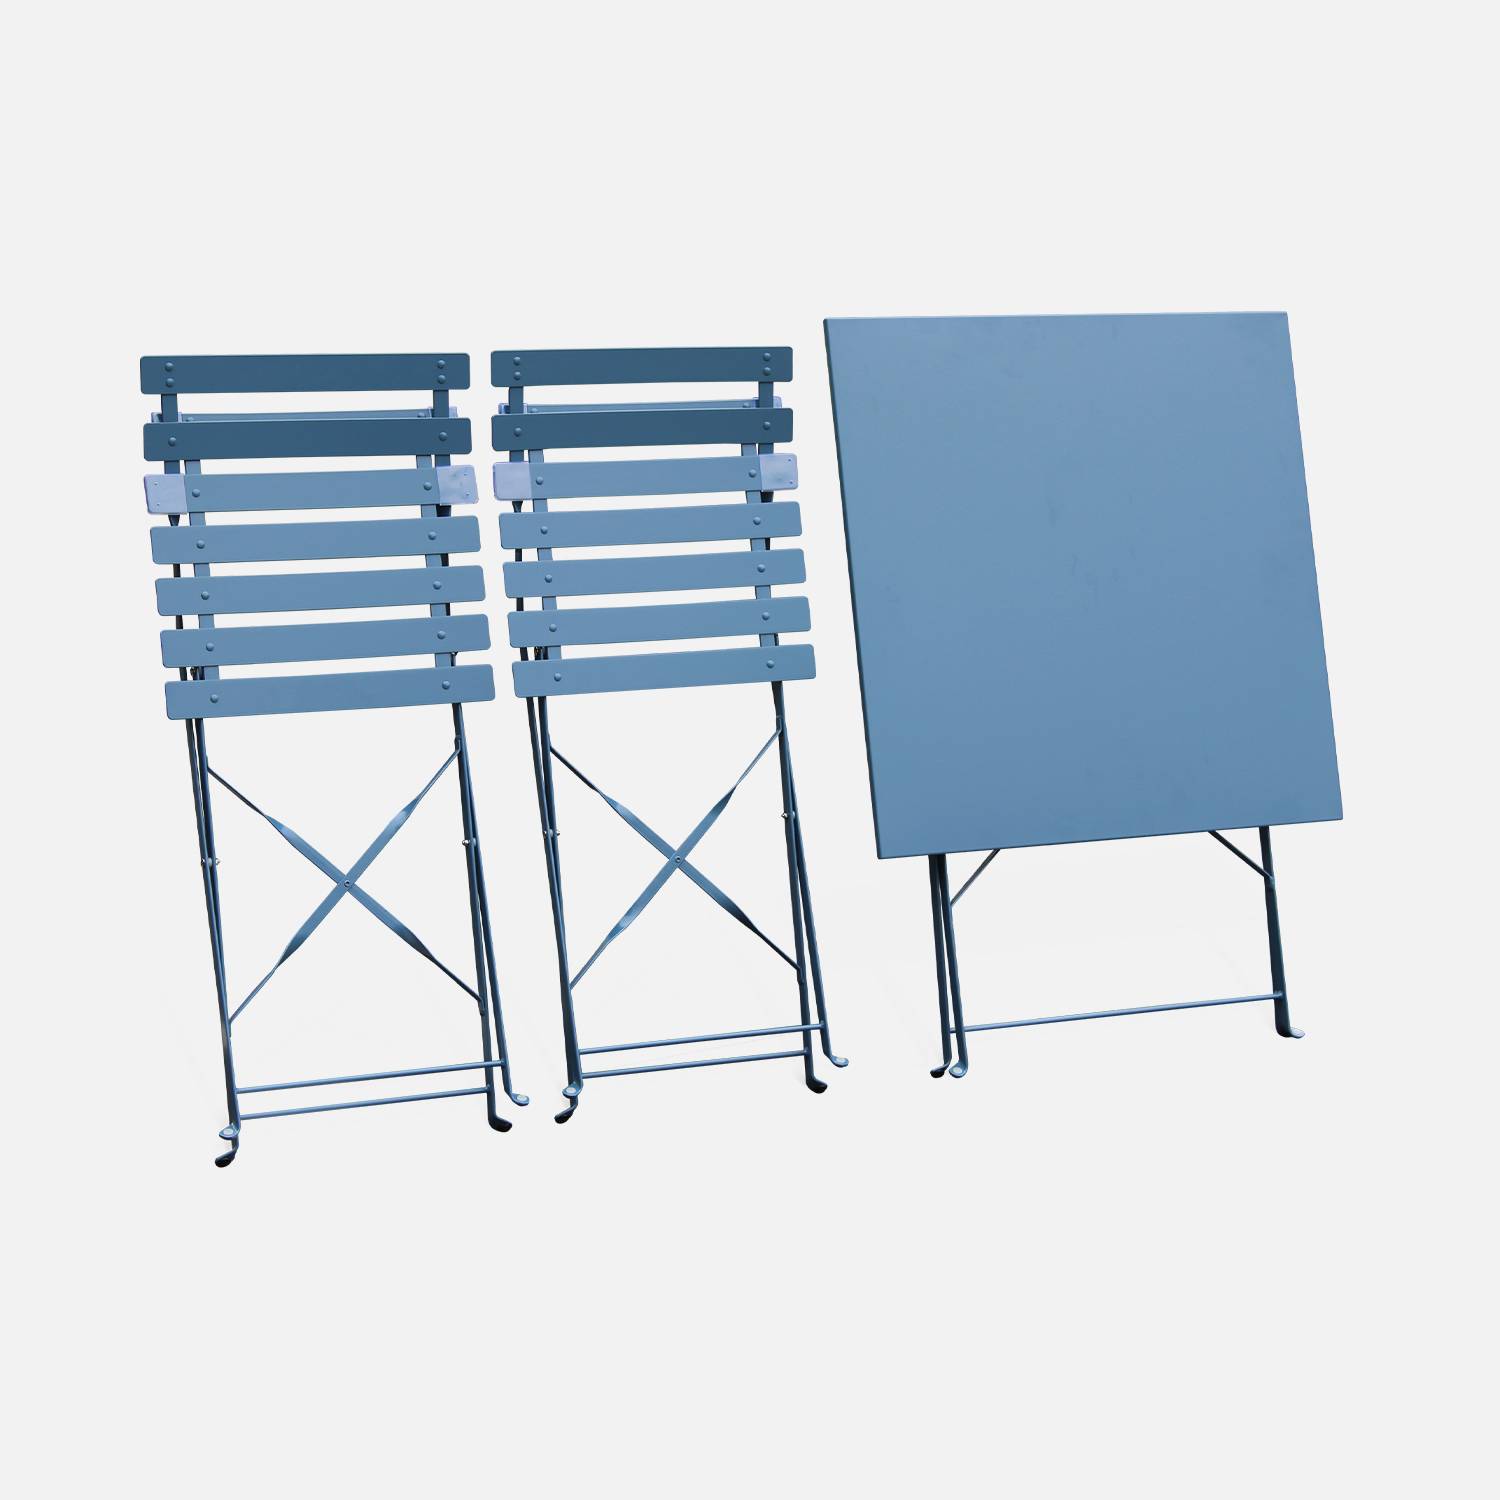 Set da giardino, bar bistrot, pieghevole - modello: Emilia, quadrato, colore: Blu grigio - Tavolo quadrato, dimensioni: 70x70cm, con due sedie pieghevoli, acciaio termolaccato, sedie con lame curve Photo6